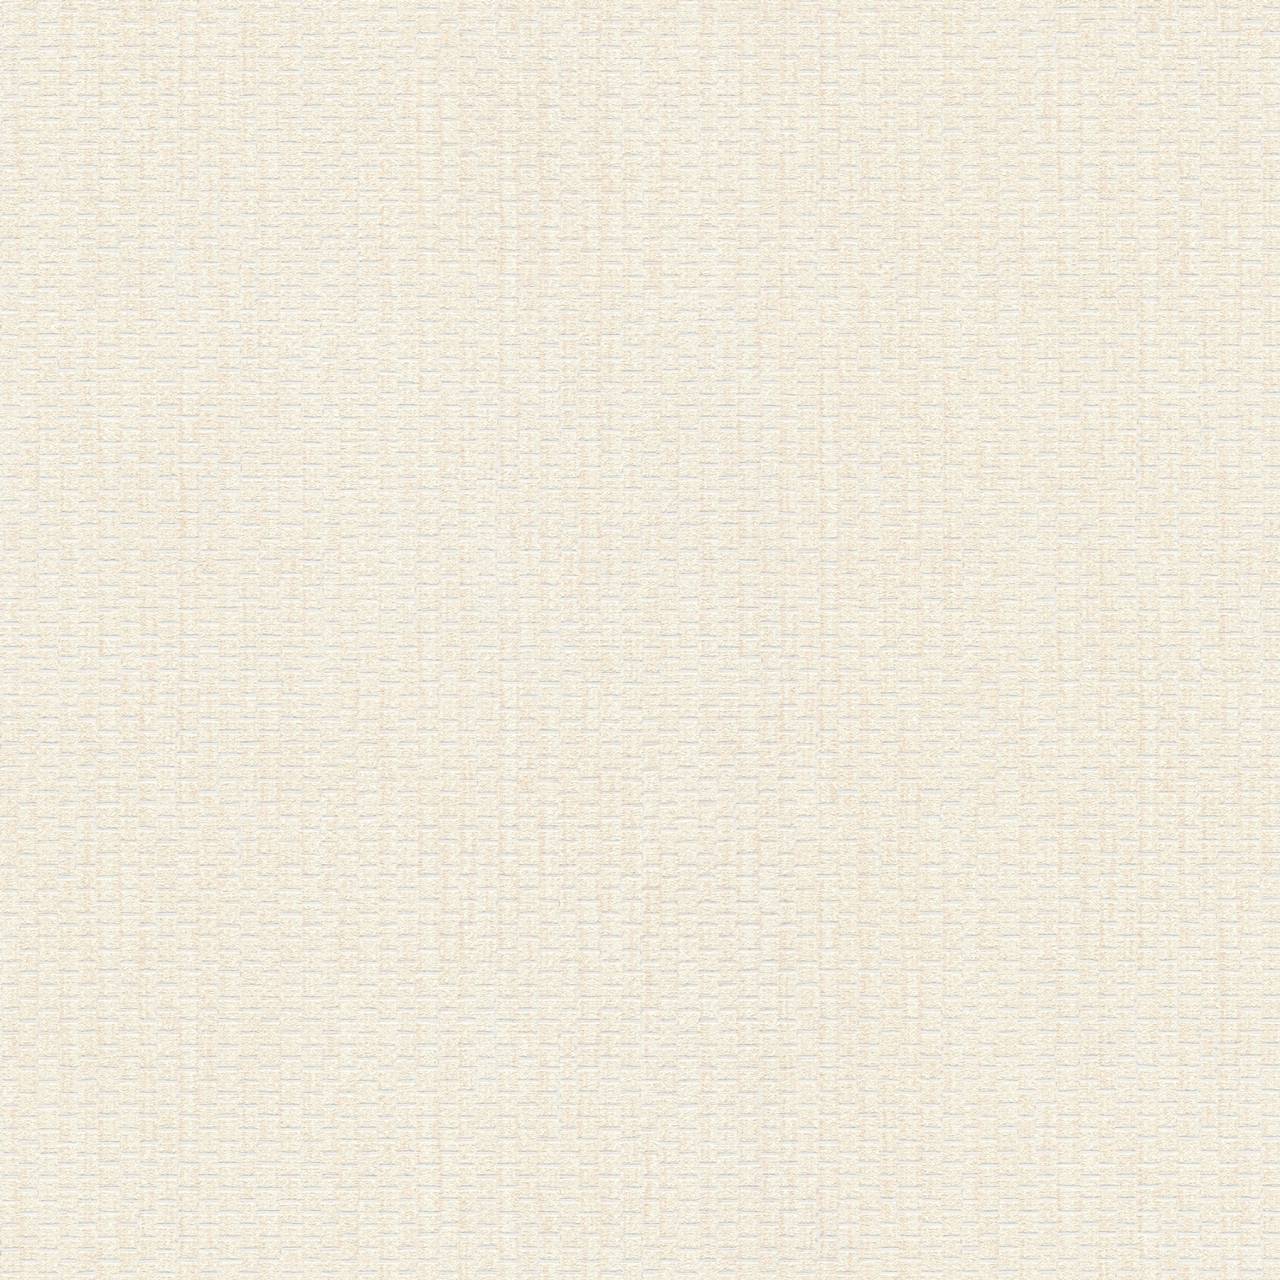 As fleece wallpaper #hygge tissue wallpaper cream 386121